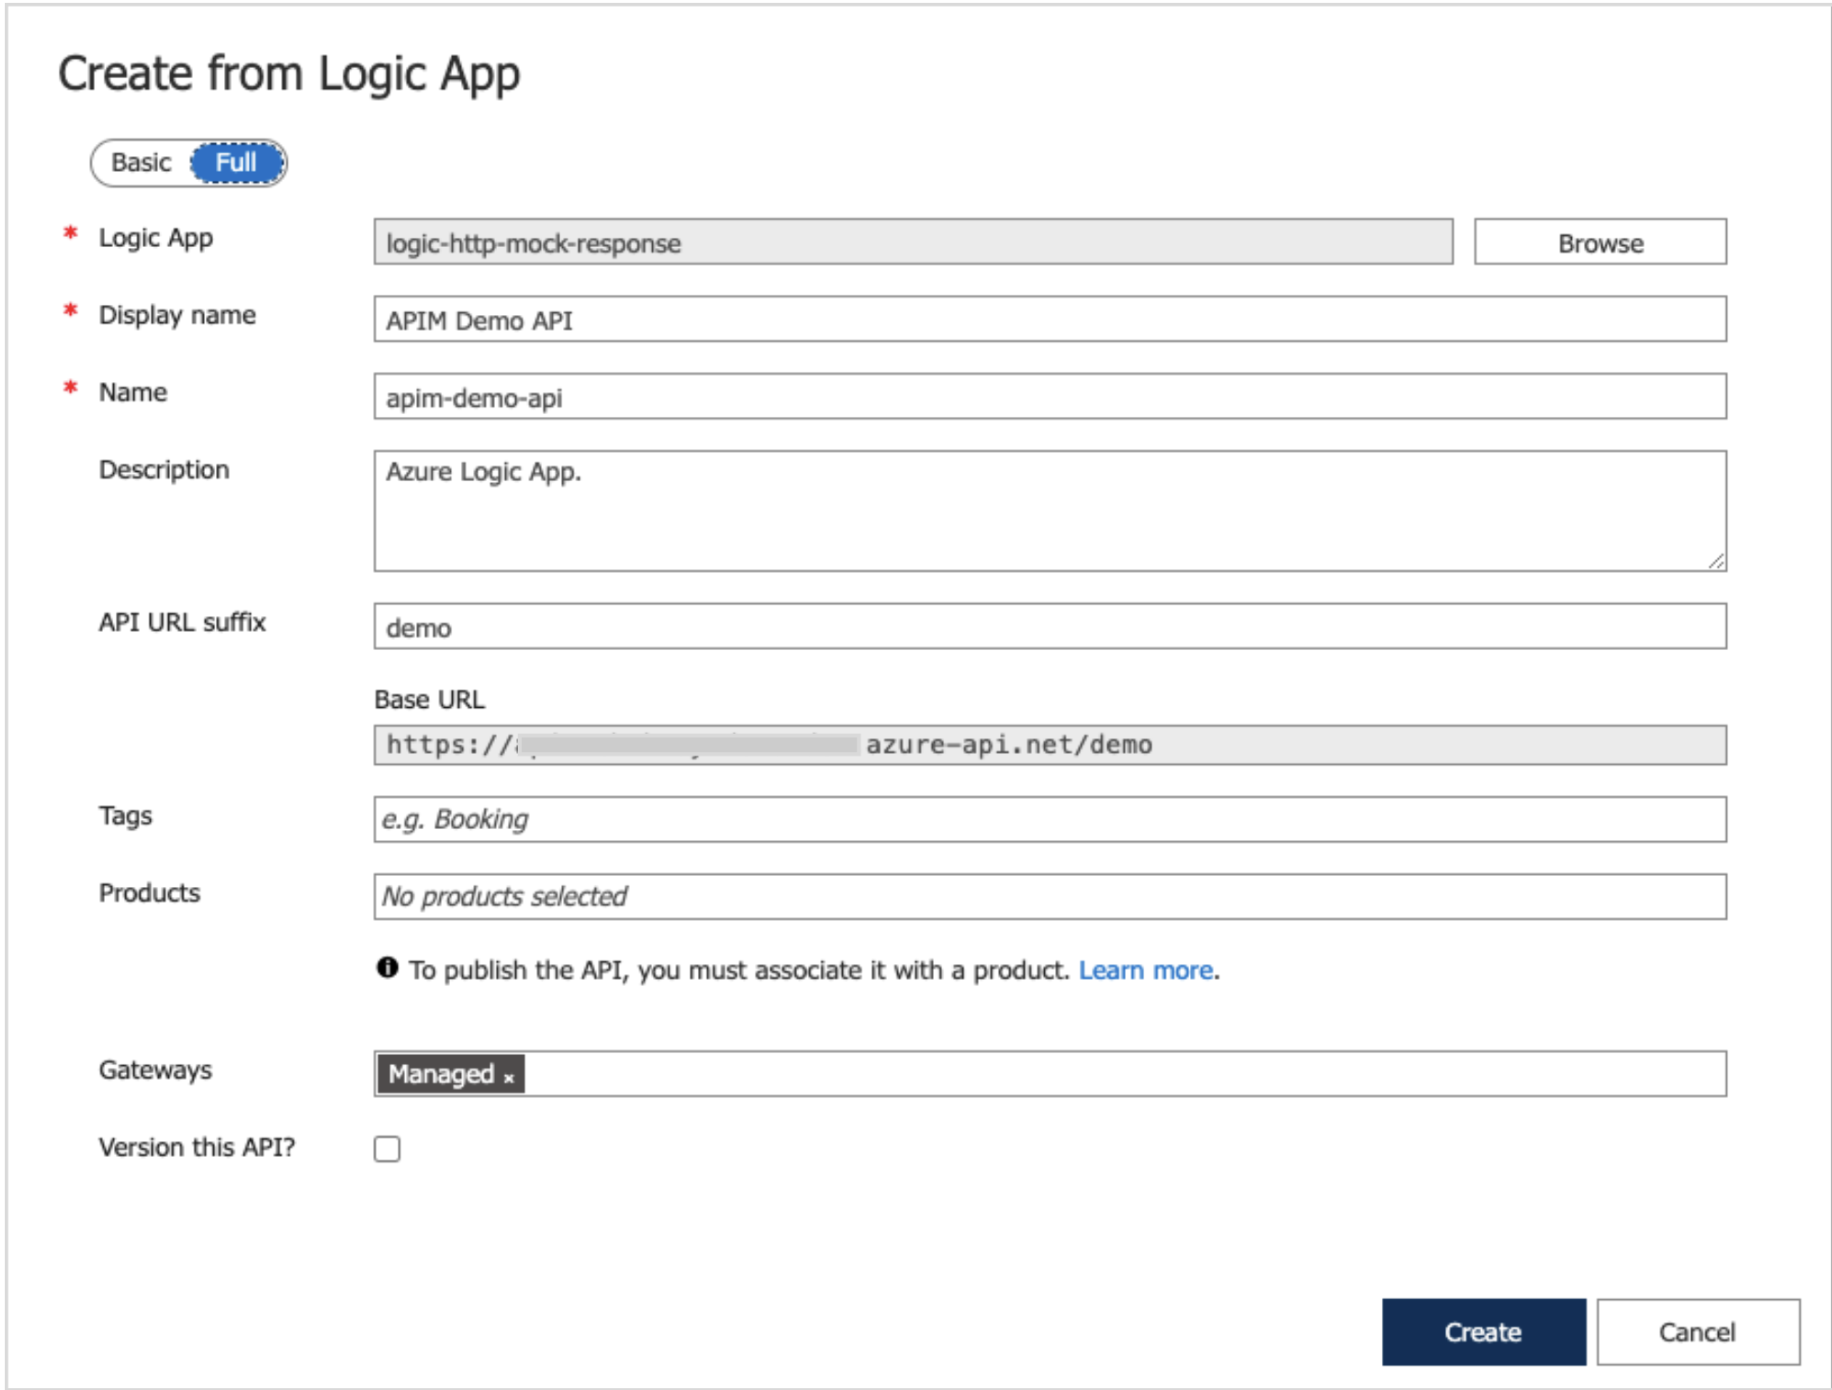 Create from Logic App dialog box (Full tab)